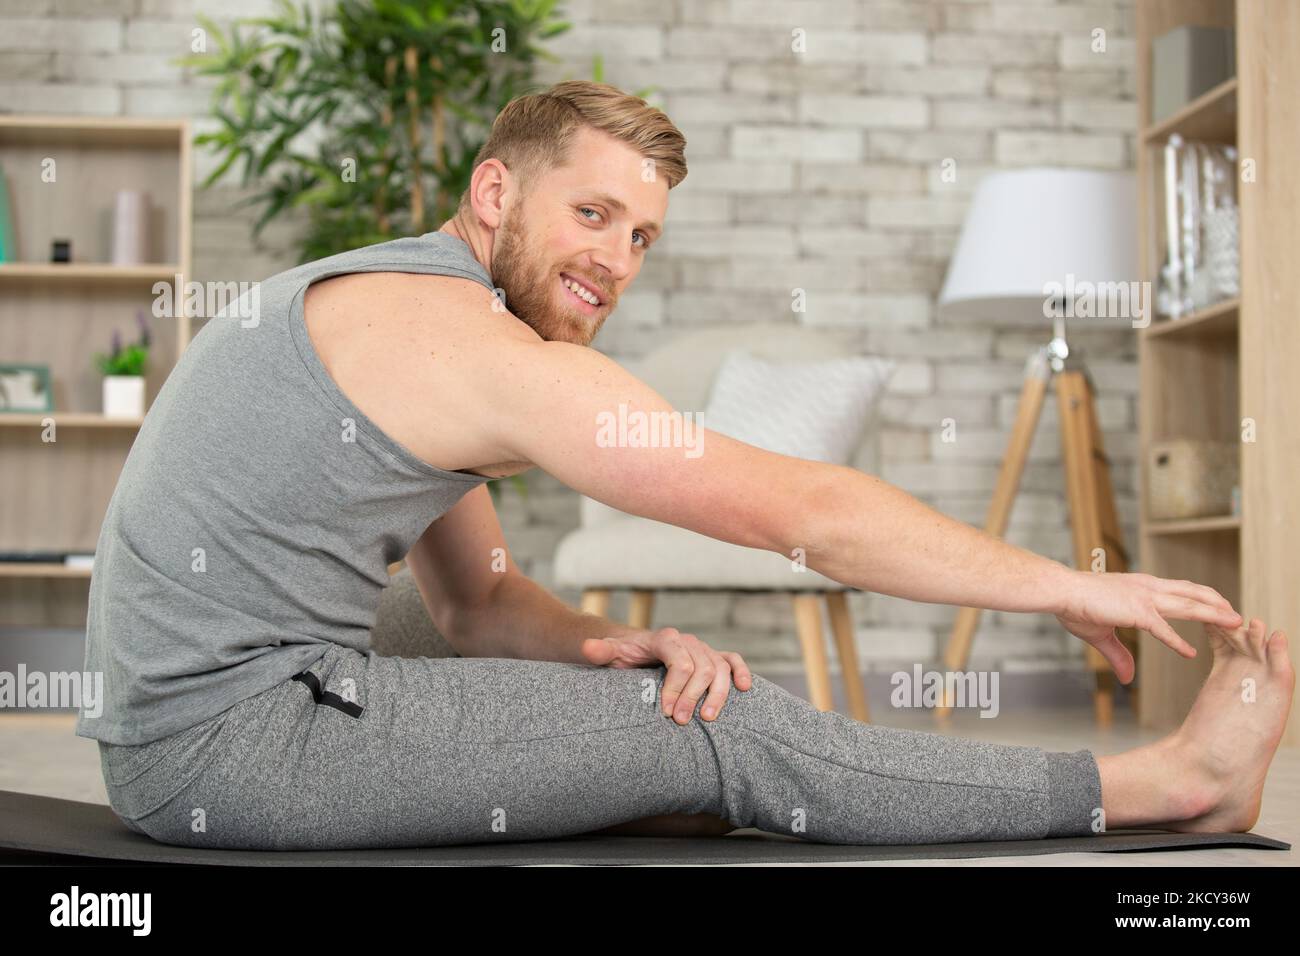 Hübscher junger Mann, der zu Hause eine Oberschenkelmuskulatur ausdehnt Stockfoto